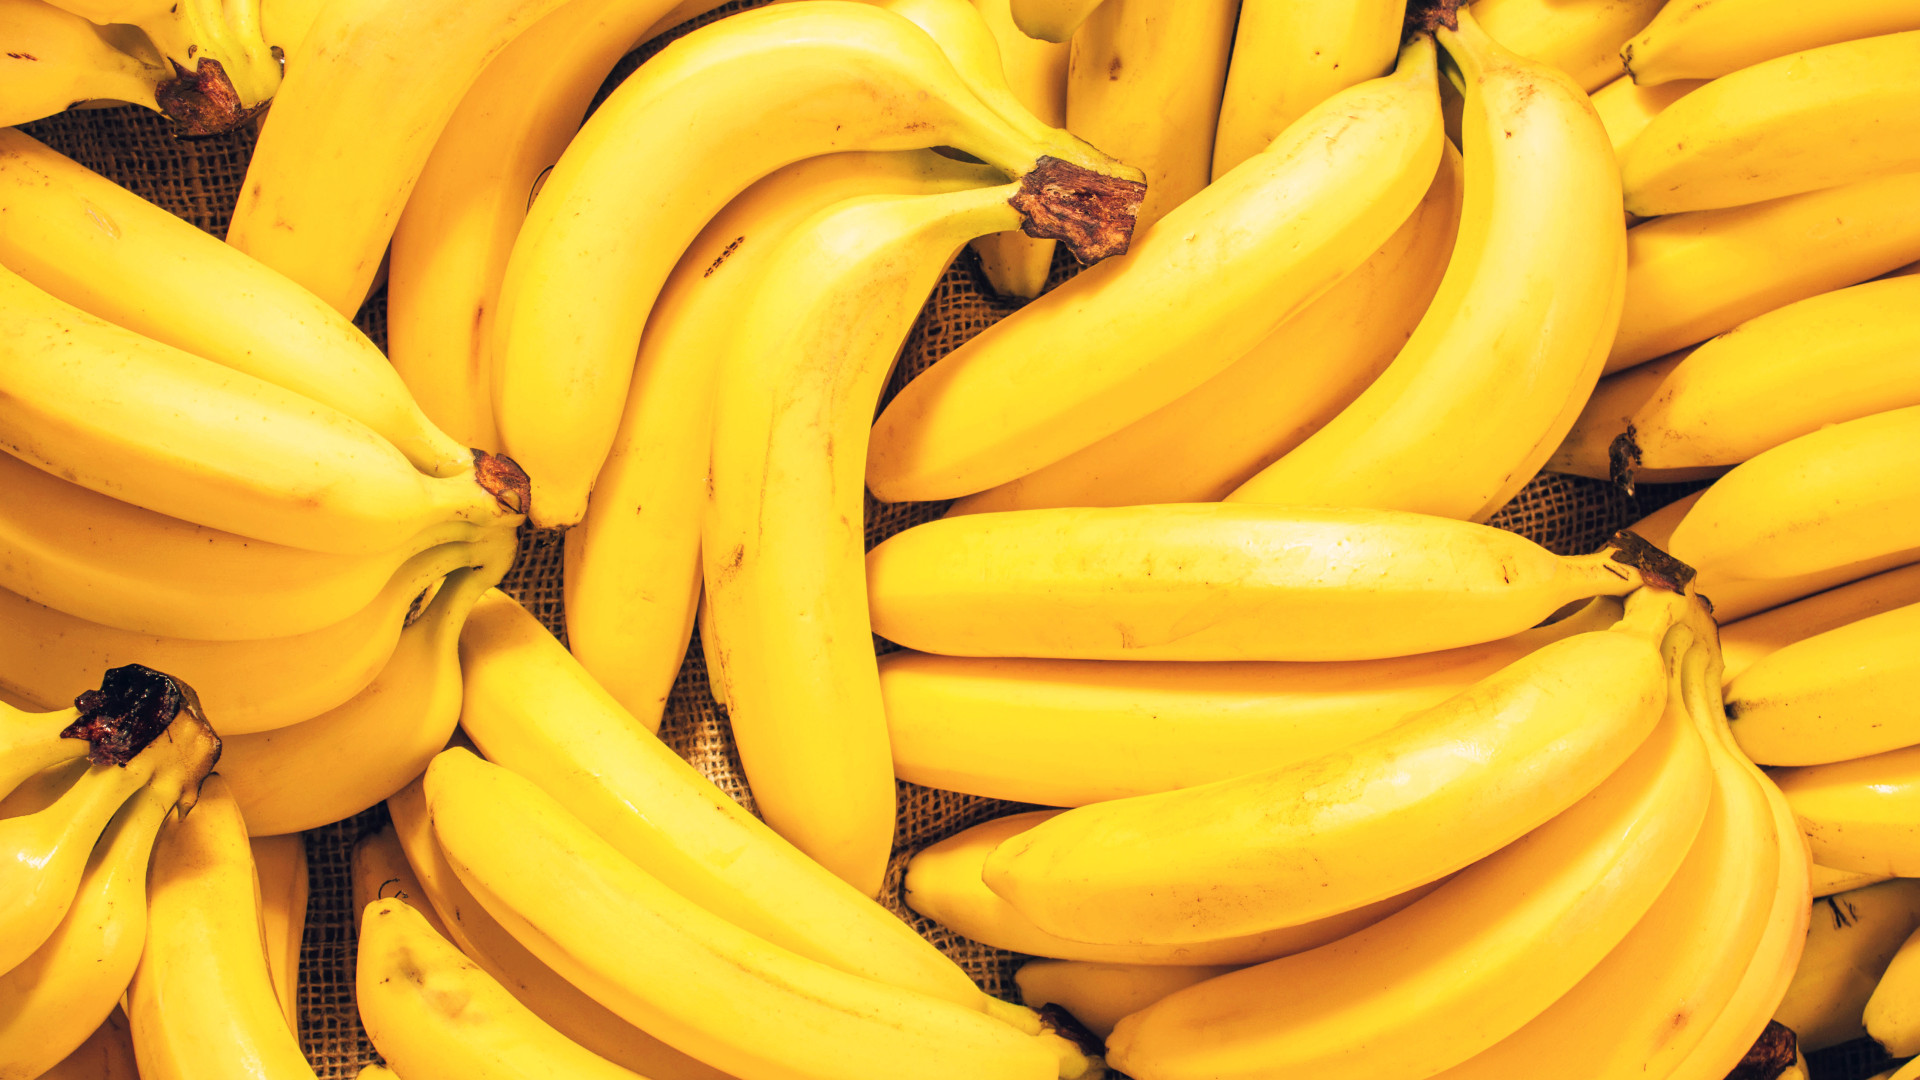  Snívanie o zrelom banáne: Aké sú významy, symbolika a spiritualita?